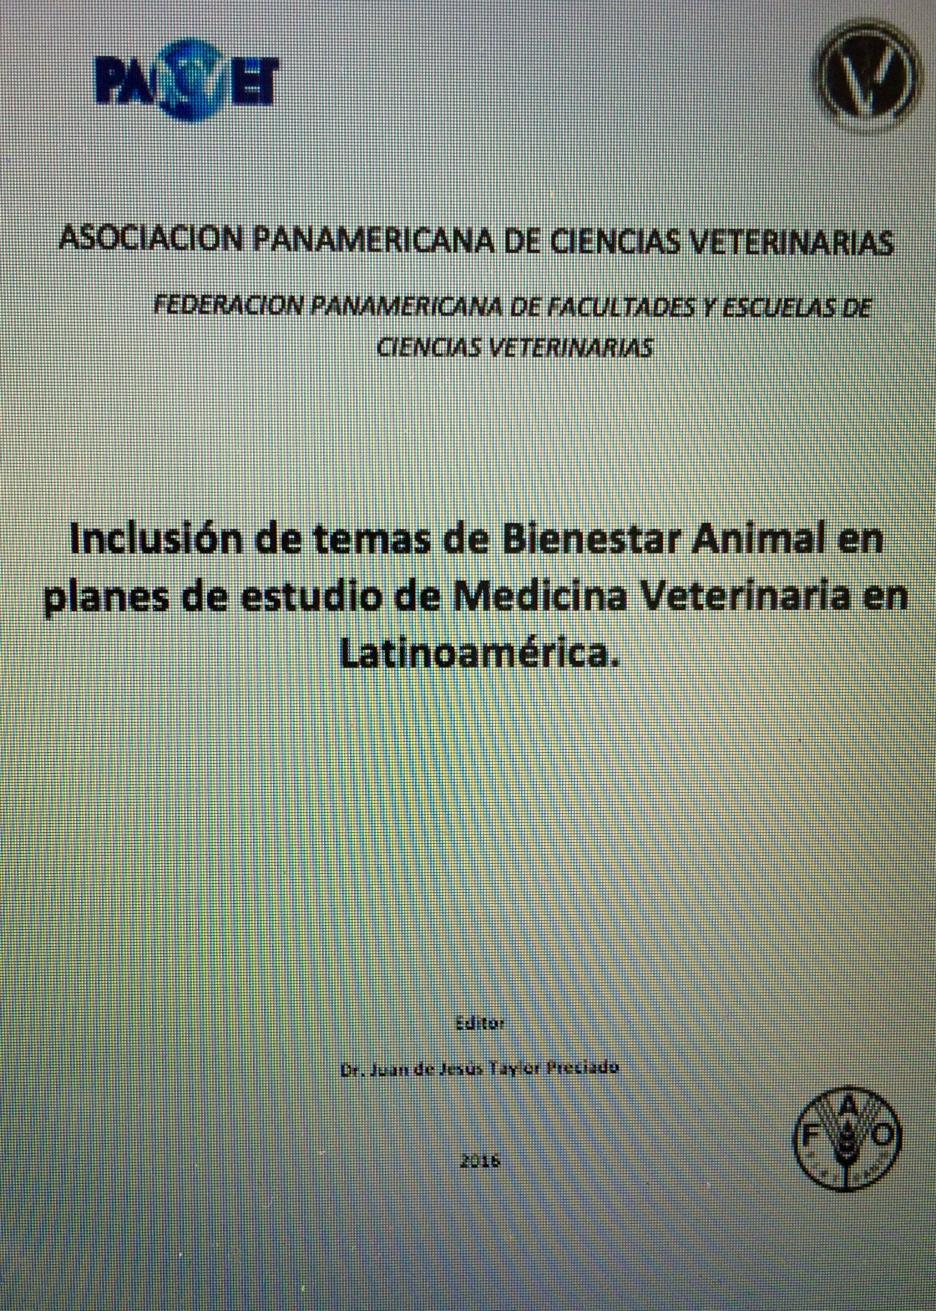 Trabajo y documento sobre: Homologación de Planes de Estudio de Medicina Veterinaria en Latinoamérica (San Martín, 2004), se propuso que las escuelas ofrecieran un curso de Bienestar